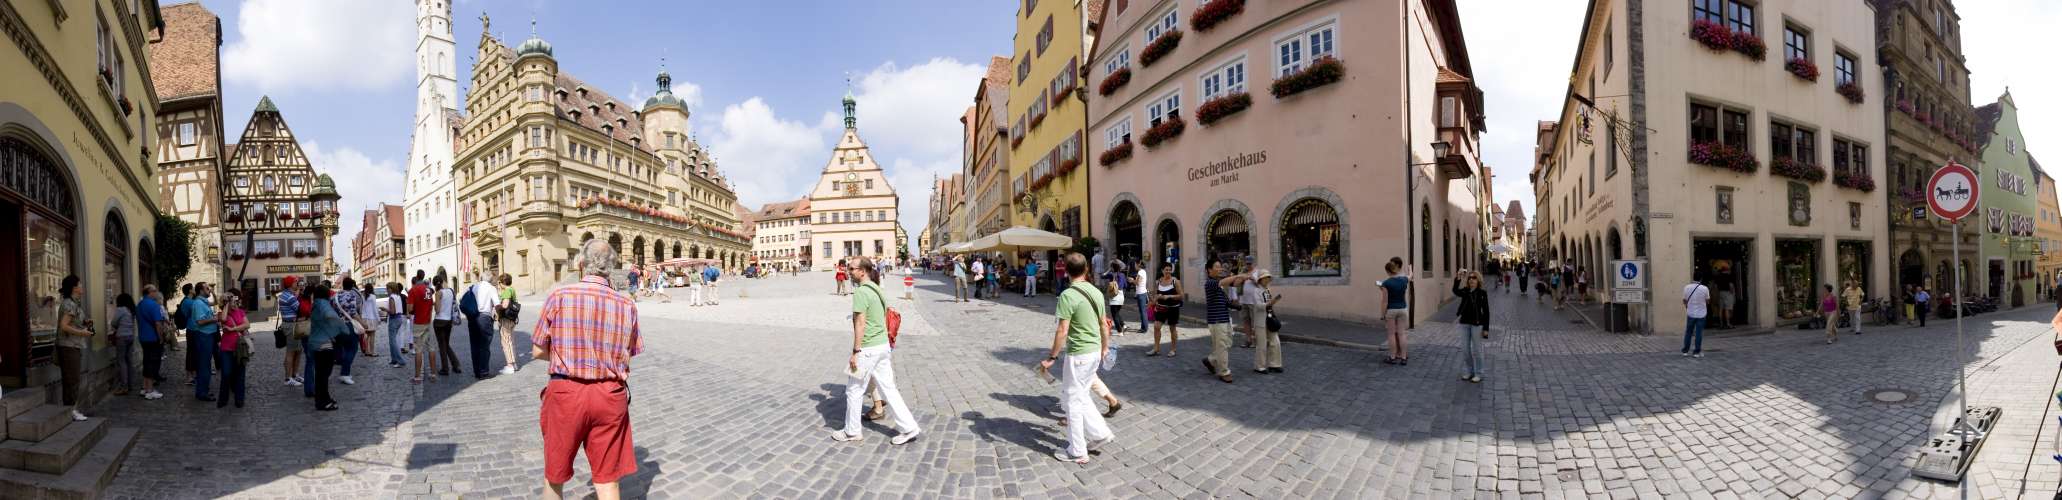 ﻿Rothenburg ob der Tauber. Eine beeindruckende, riesige Altstadt auf dem Berg.